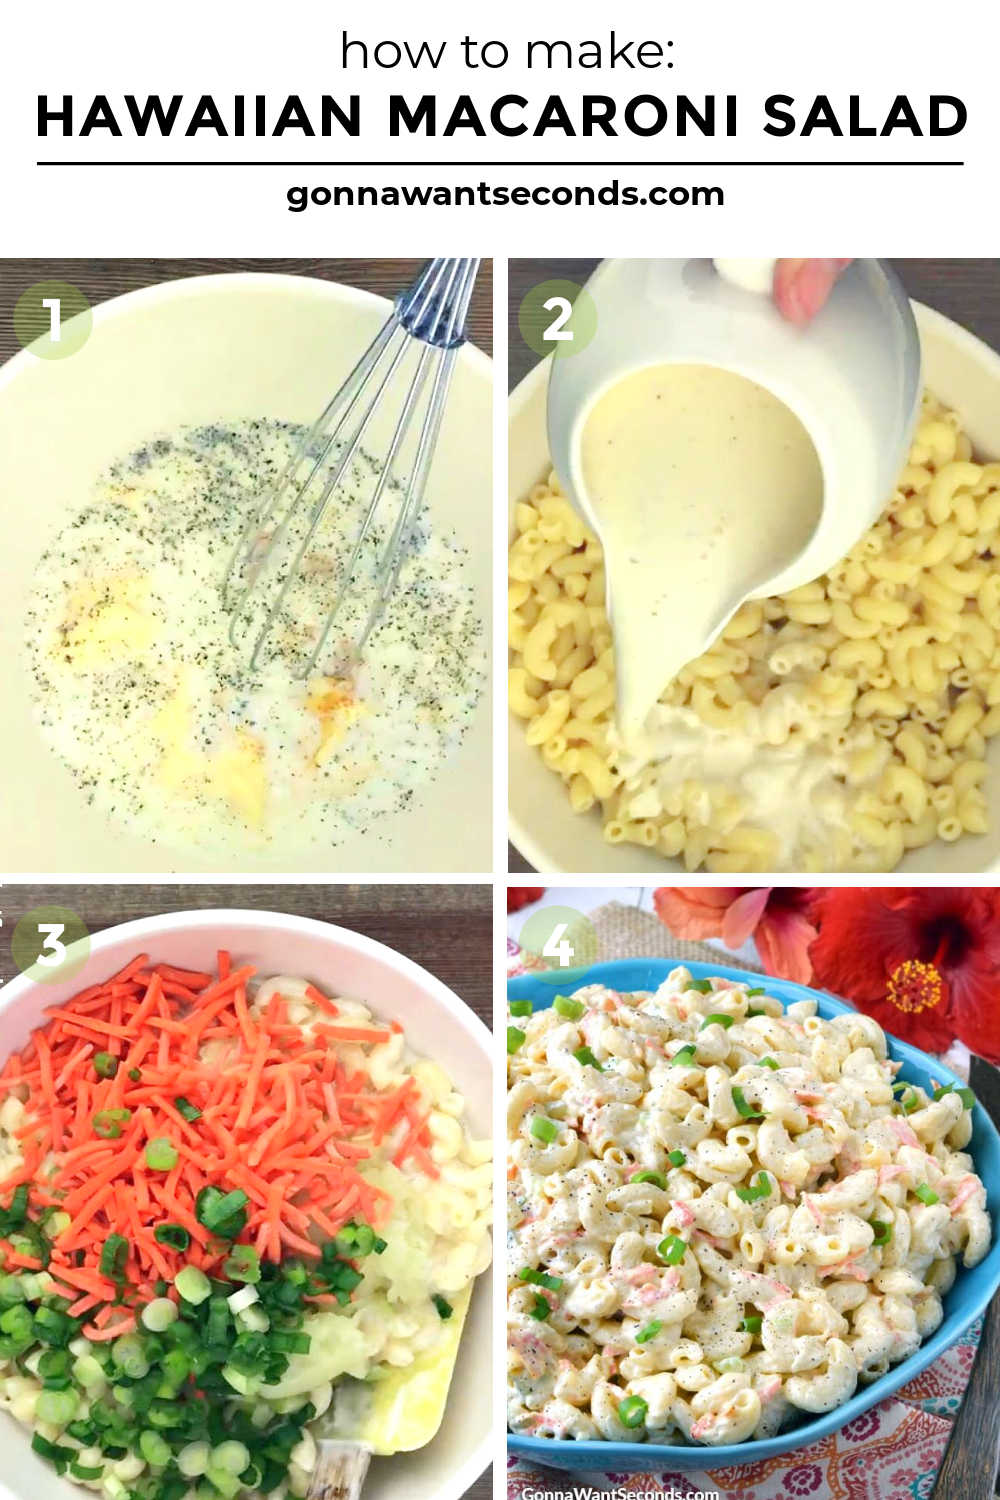 step by step how to make hawaiian macaroni salad